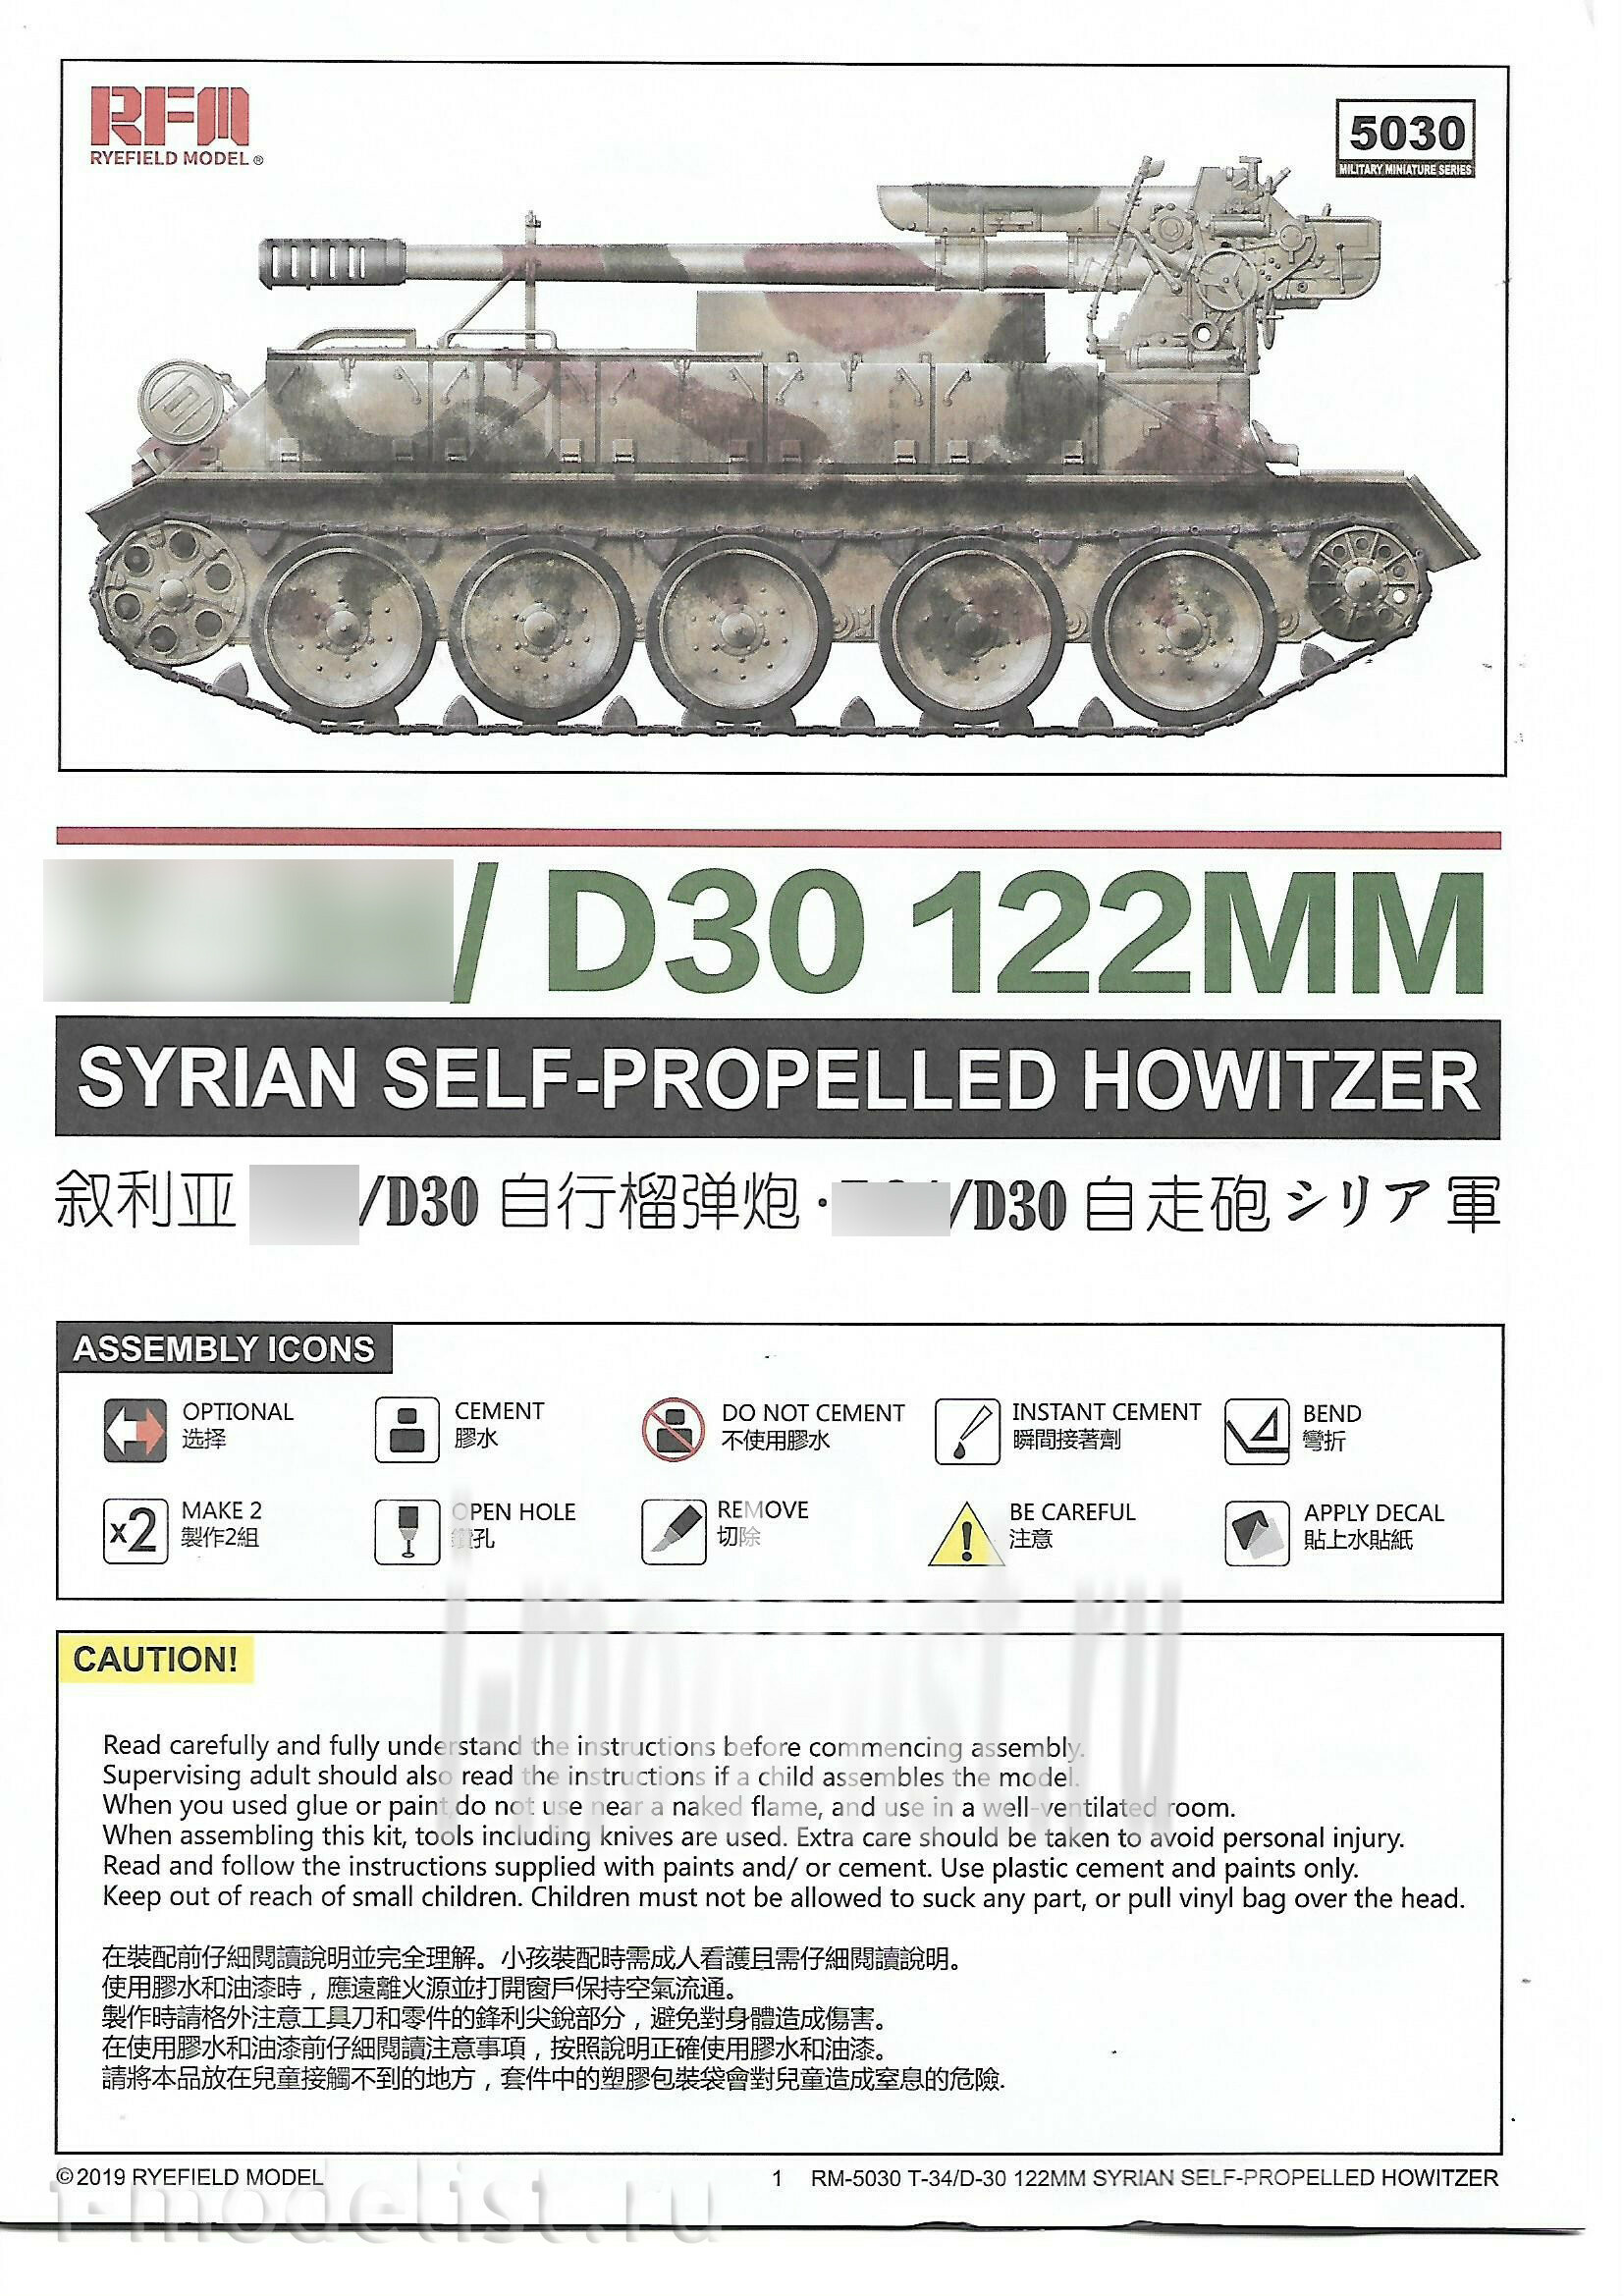 RM-5030 Rye Field Model 1/35 Tank 34/D-30 SYRIAN 122MM SELF-PROPELLED HOWITZER